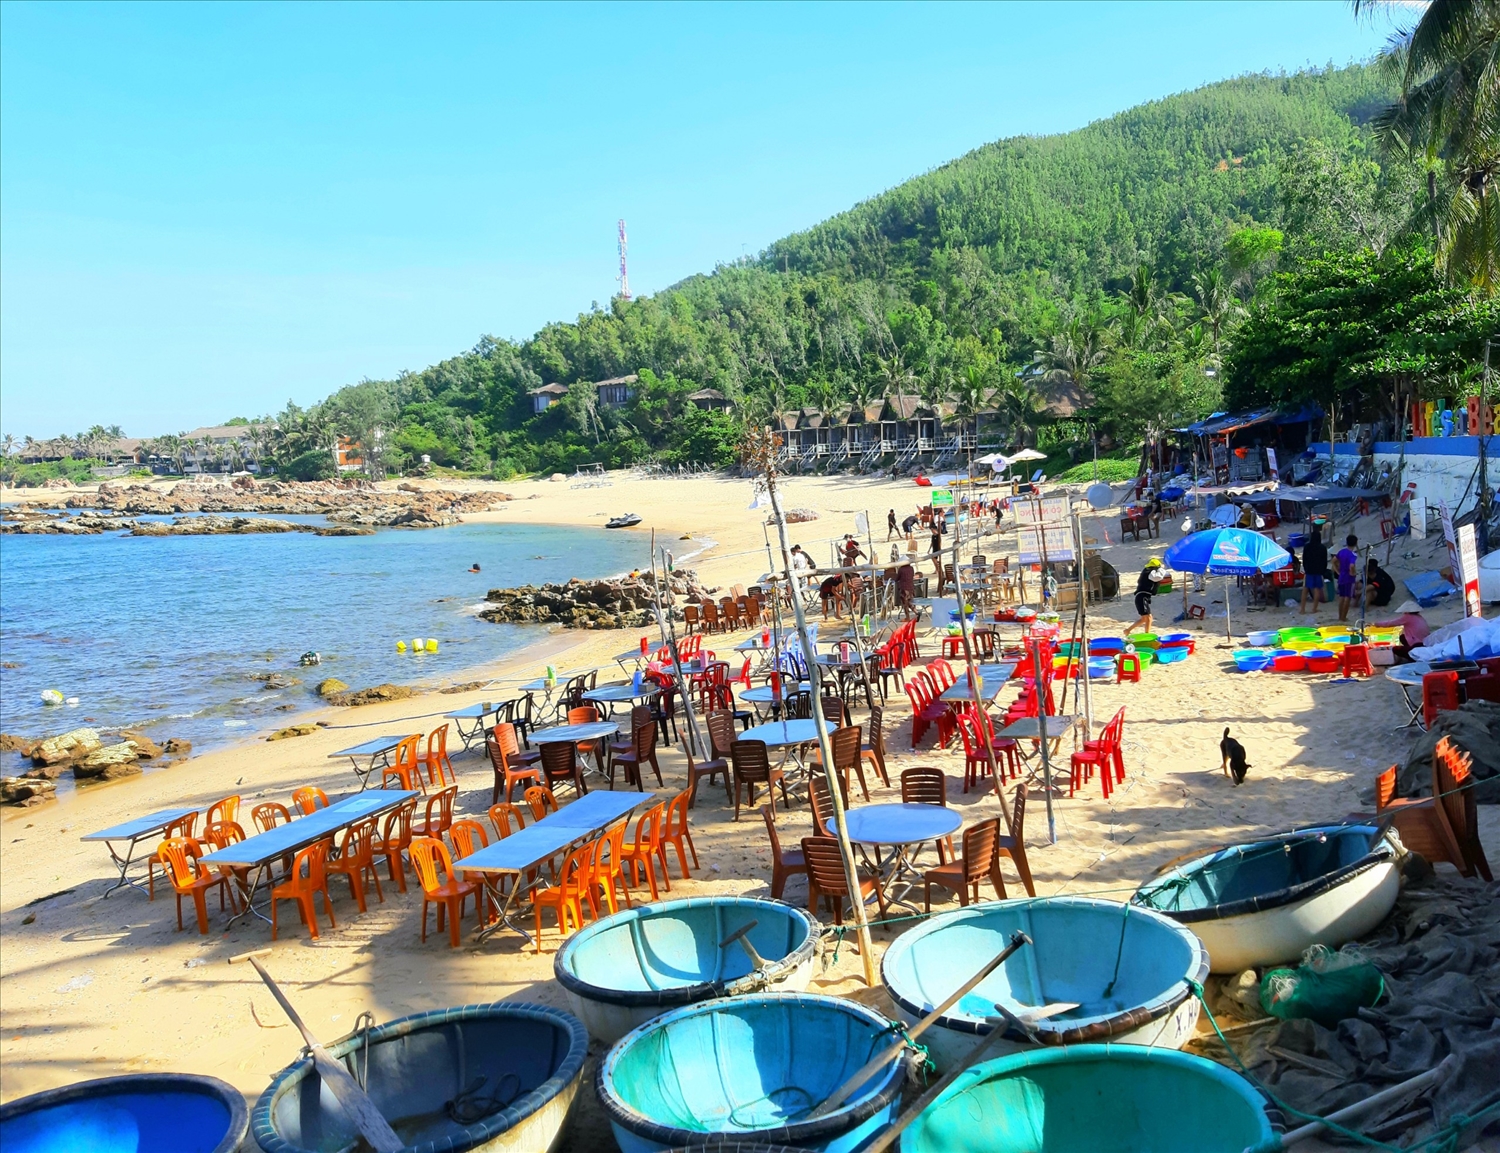 Khu vực biển Bãi Xép những ngày đầu tháng 6, la liệt bàn ghế được bày ra để buôn bán hải sản